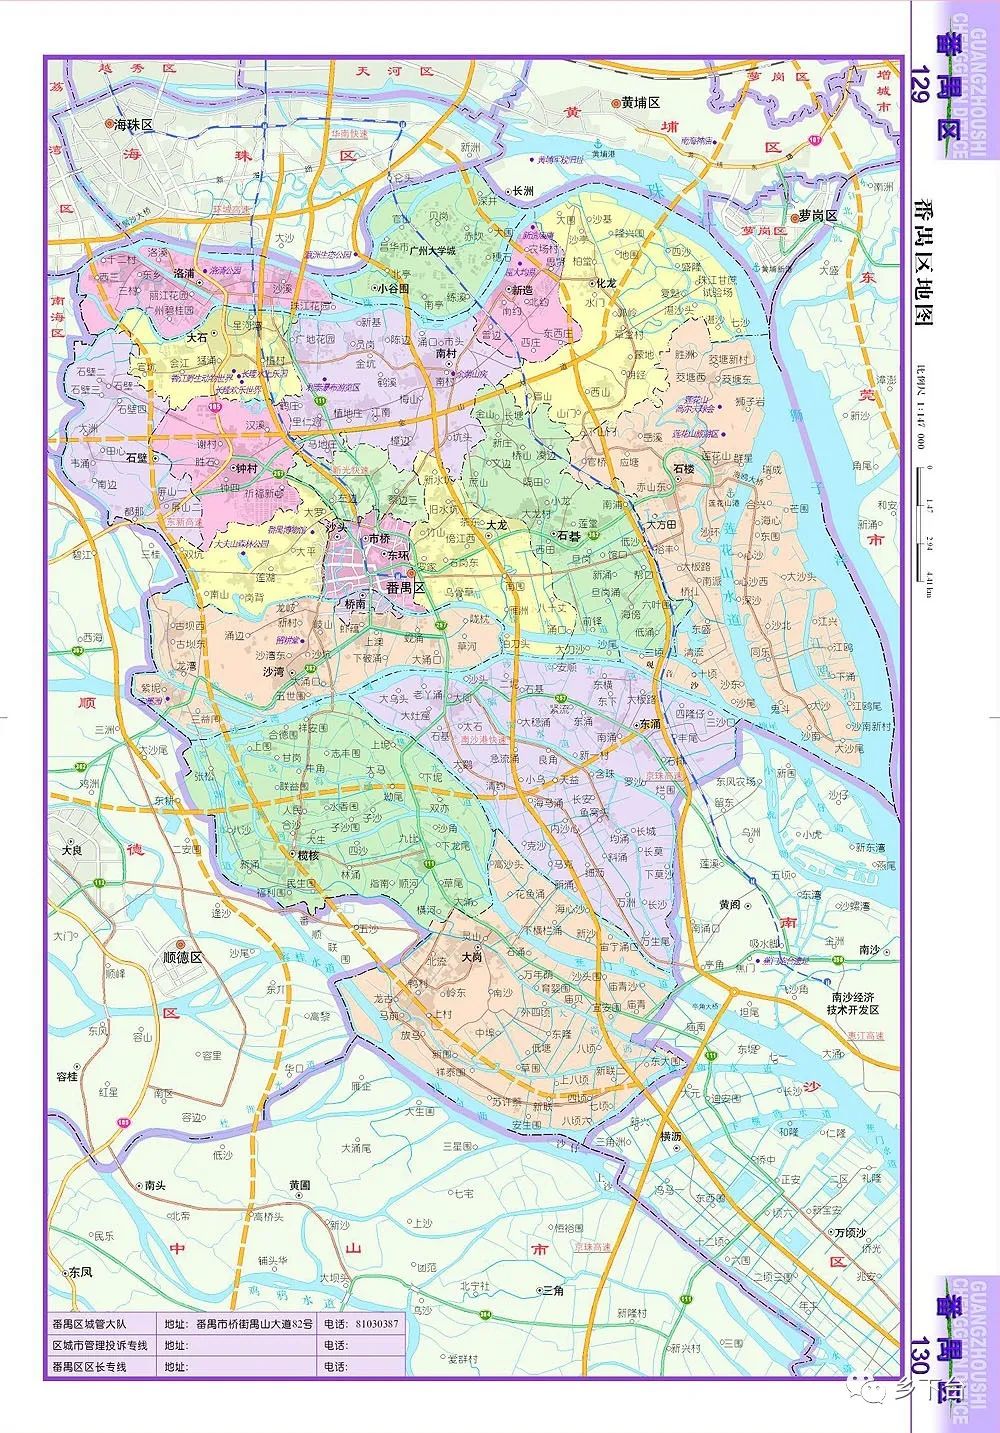 这是2005年南沙分家后,番禺区的样子……|地图